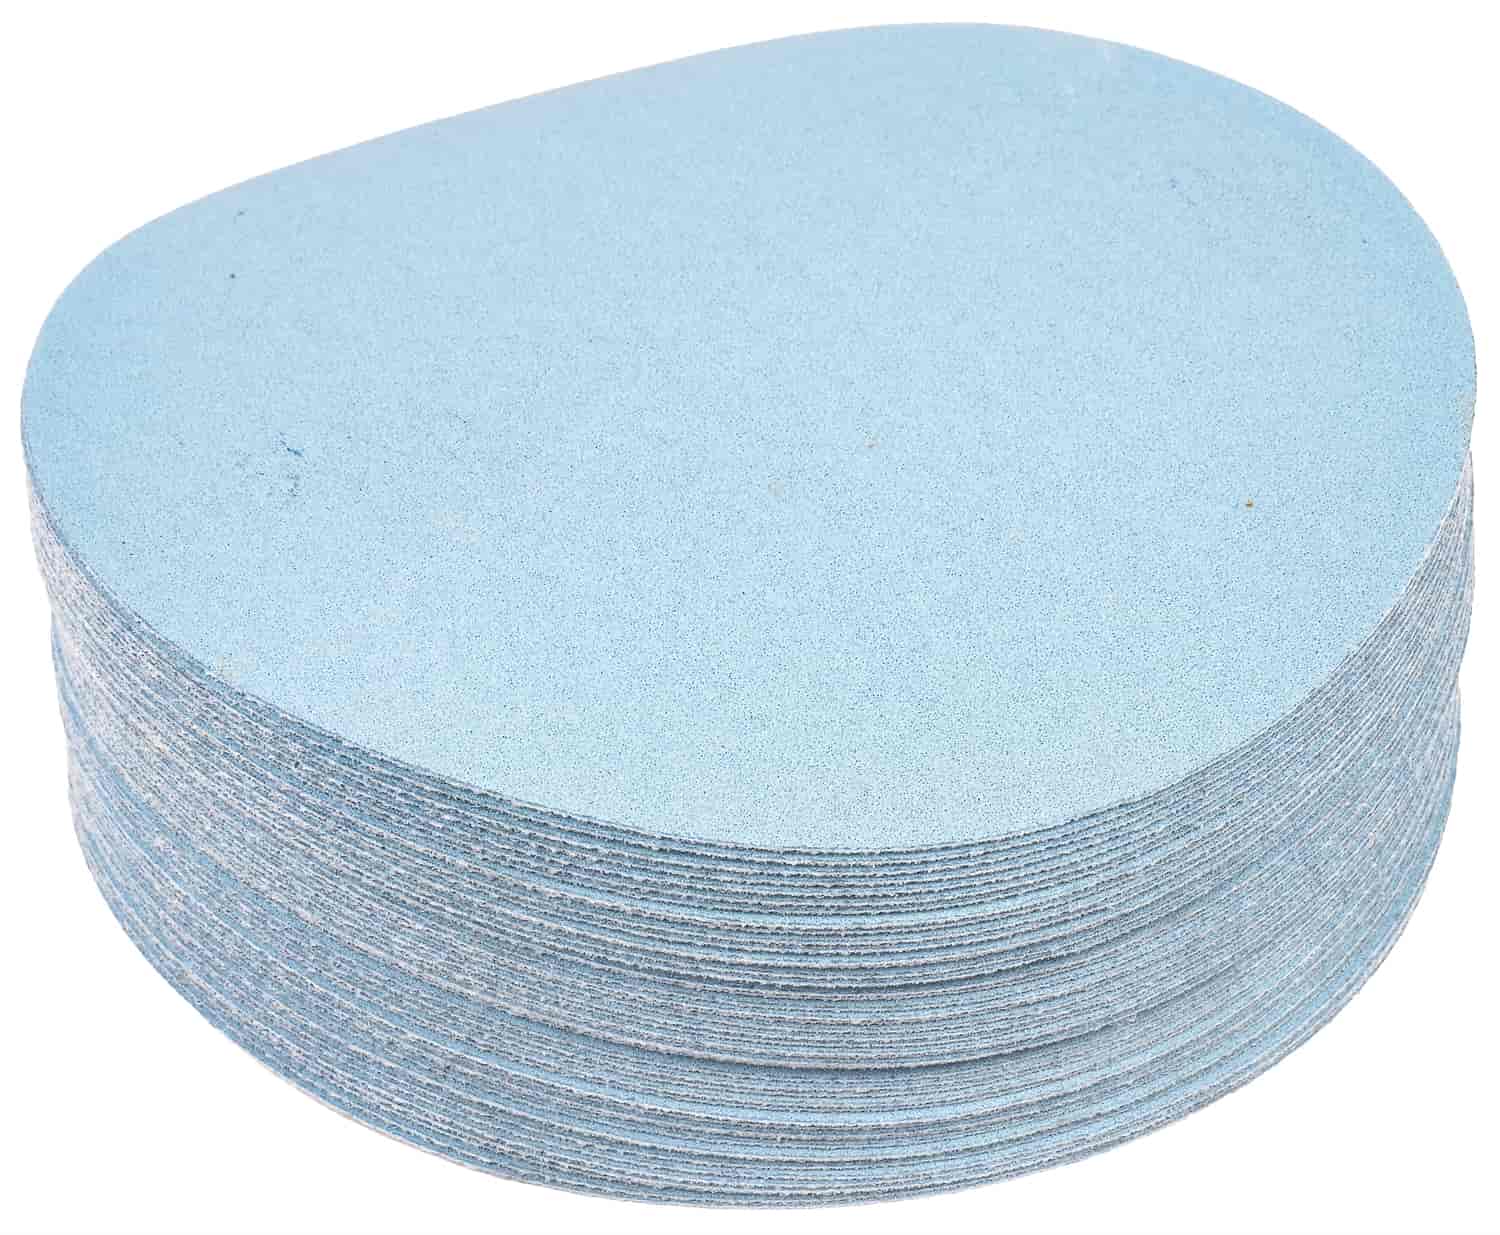 Automotive Sandpaper Discs [150 Grit]